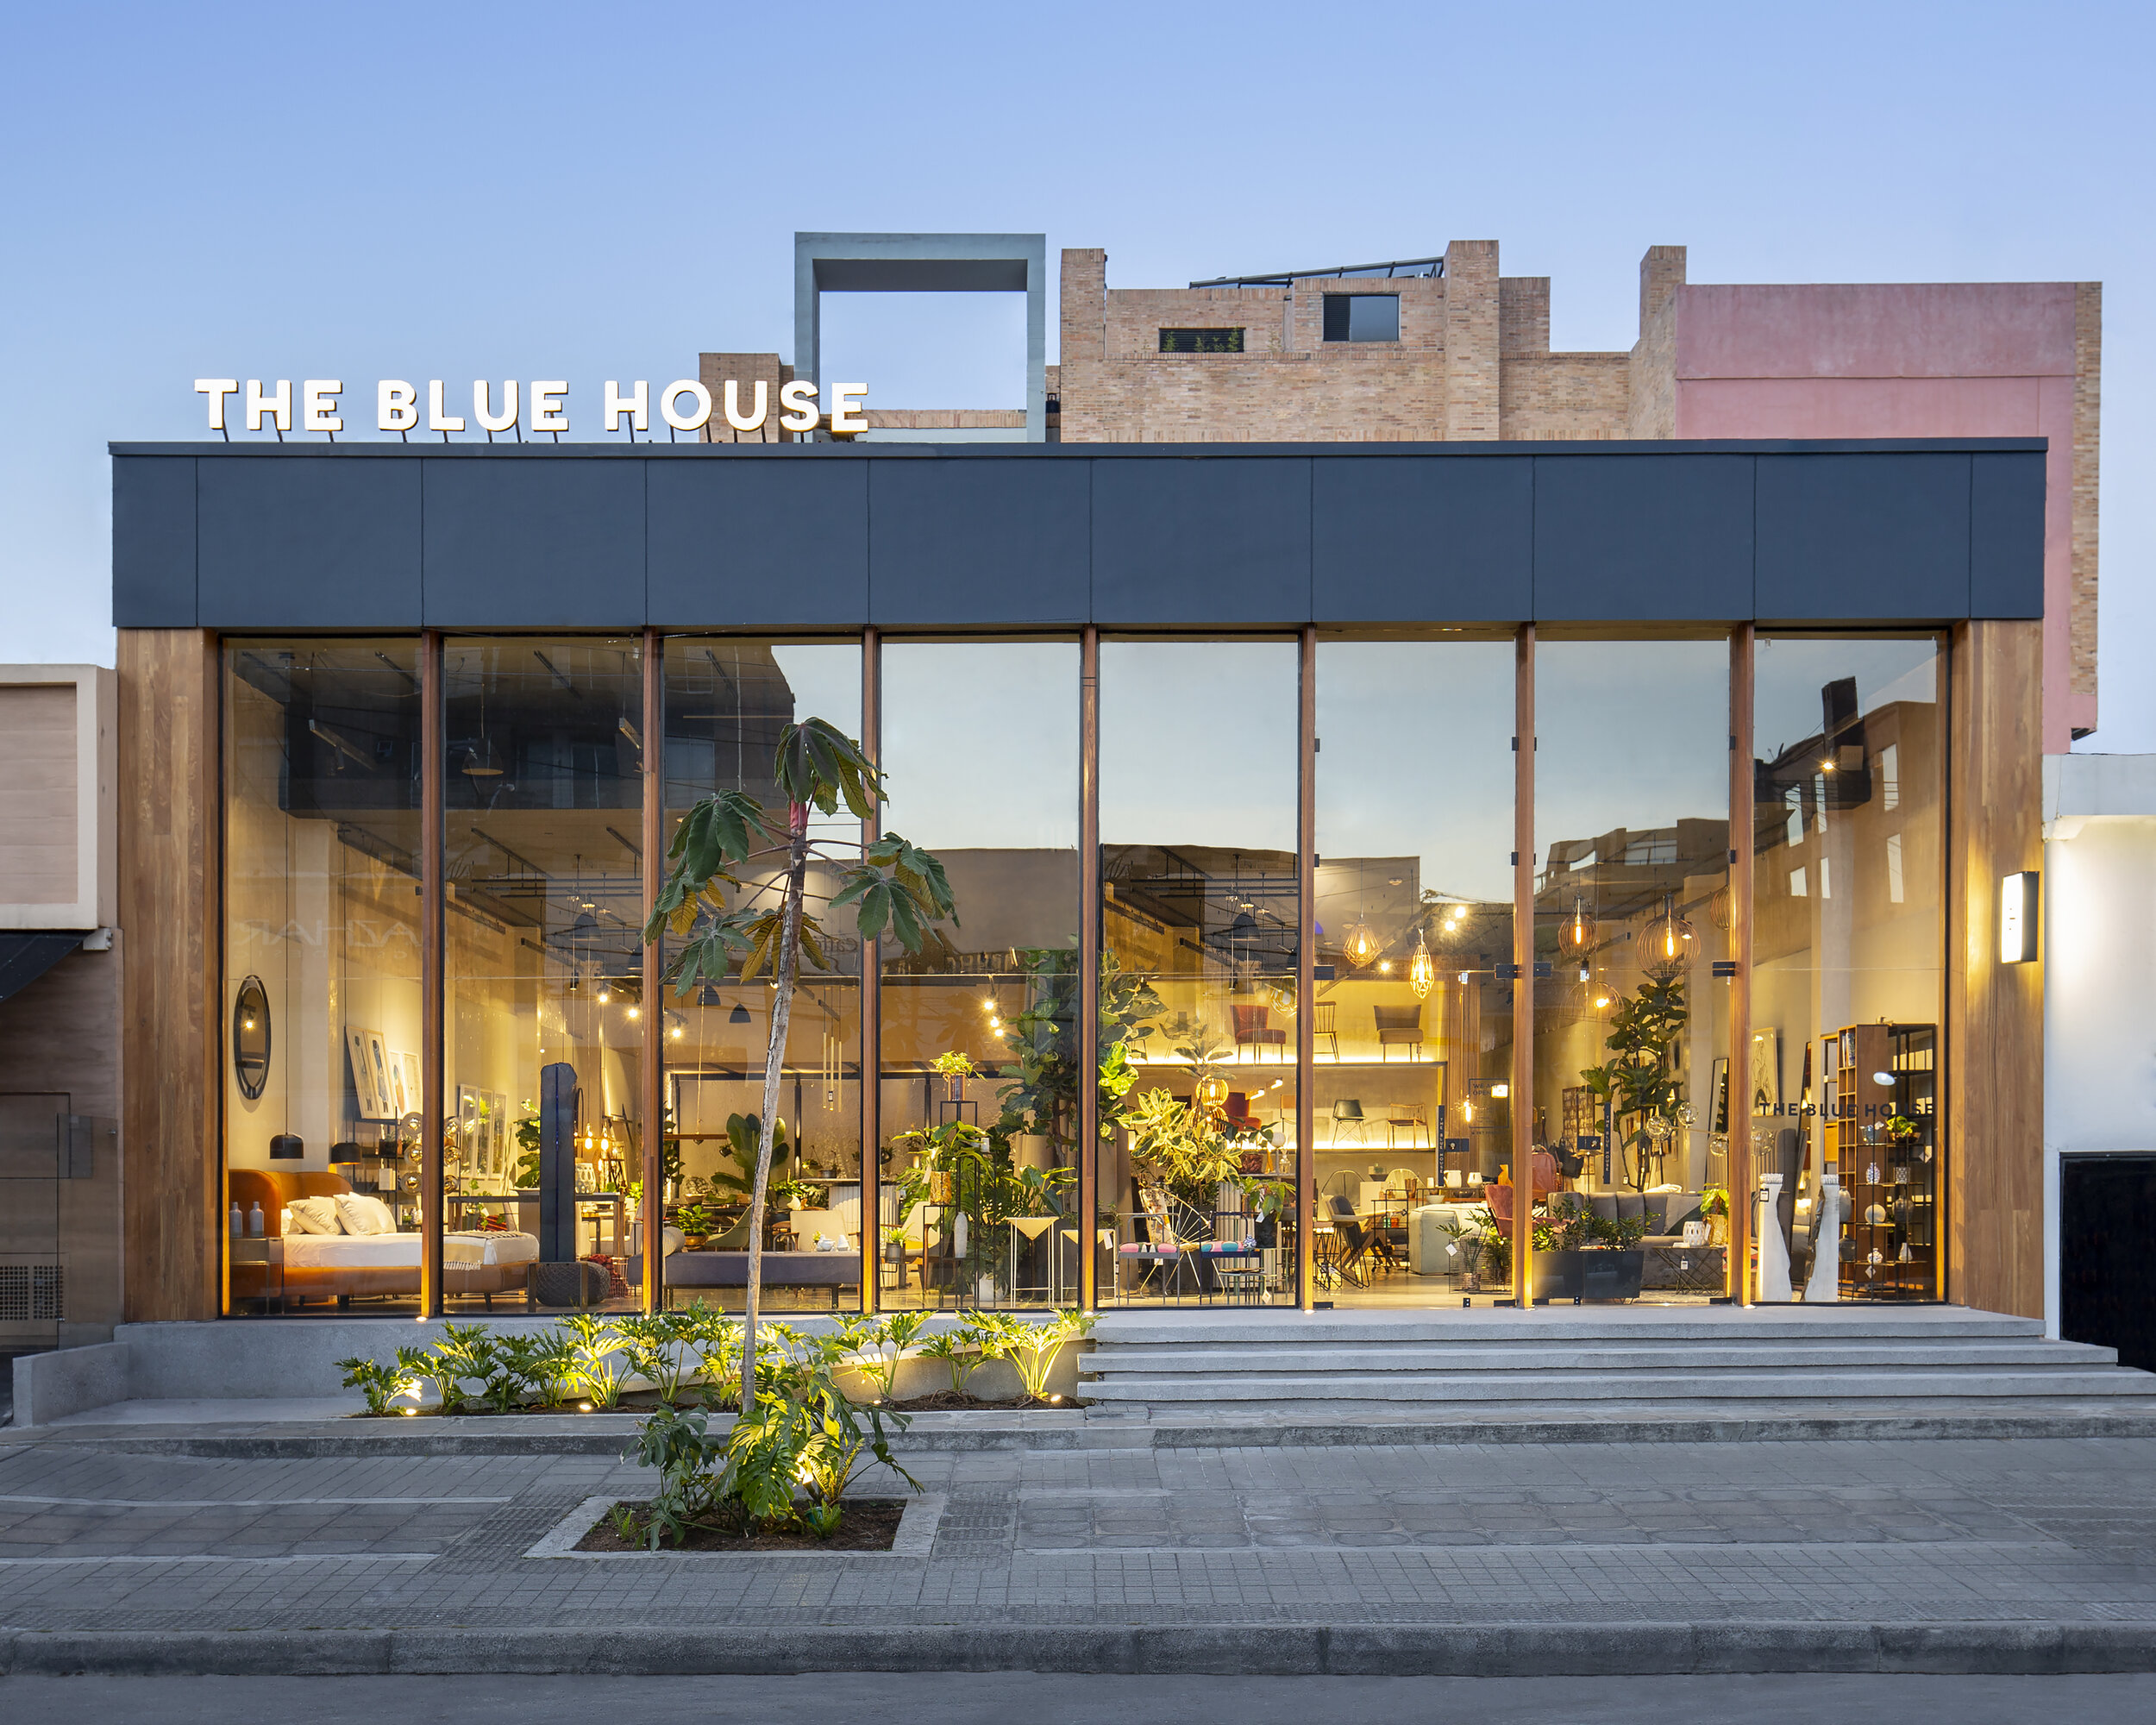 THE BLUE HOUSE BOGOTÁ